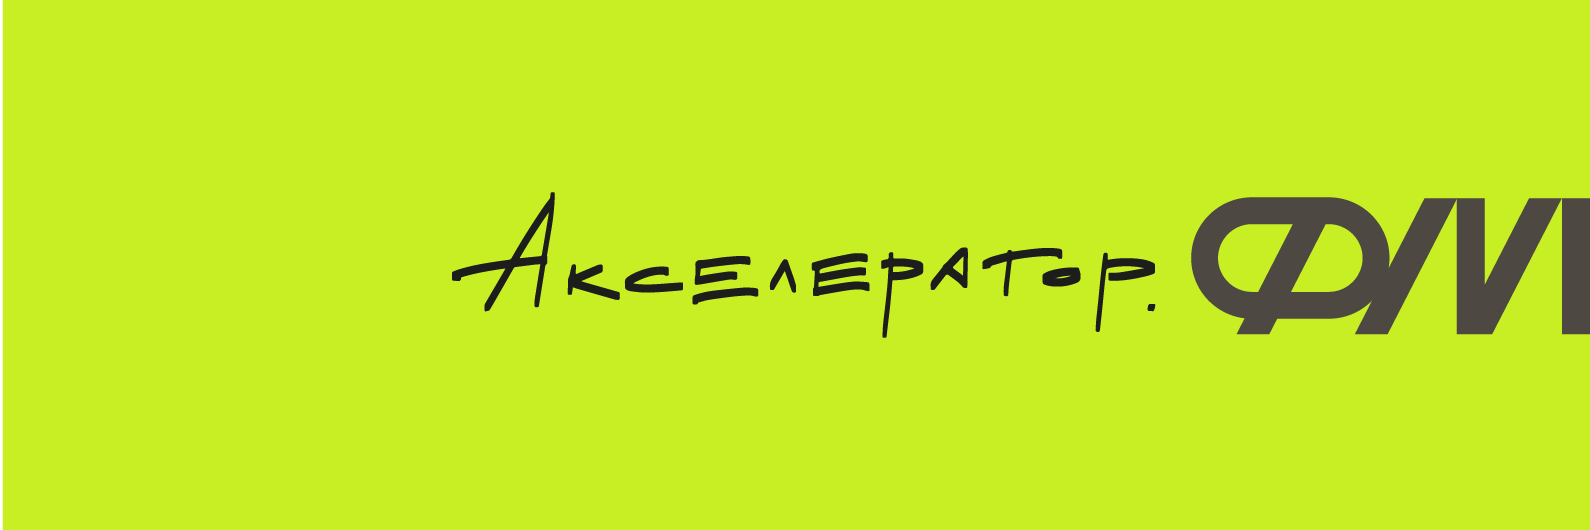 Фонд Андрея Мельниченко - Фонд Мельниченко объявляет о запуске «Акселератор.ФМ»